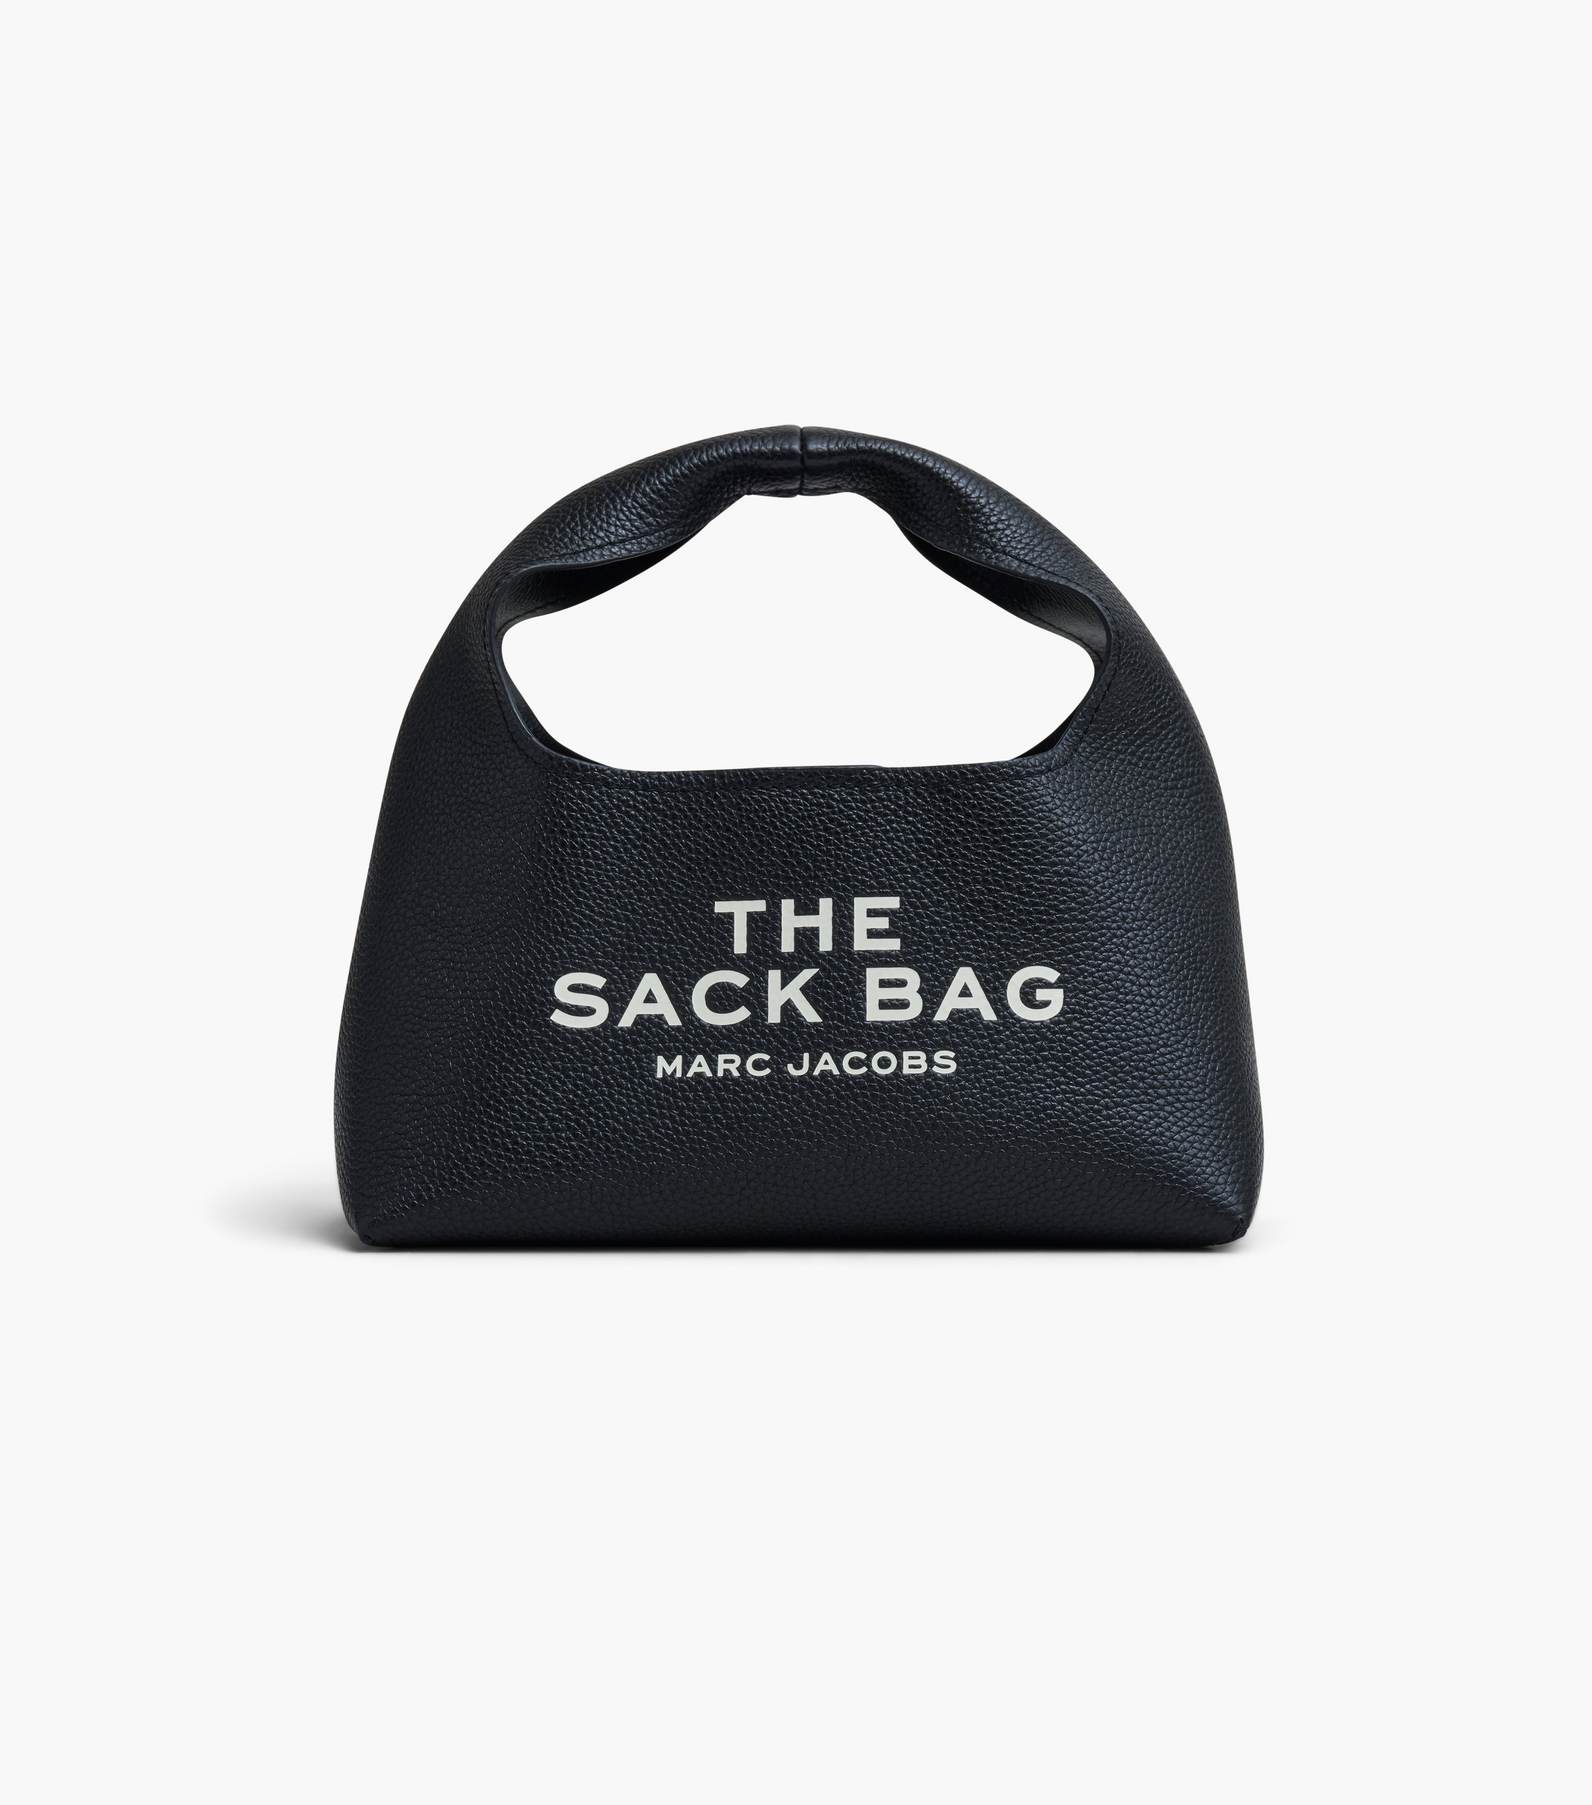 The Sack Bag, Marc Jacobs